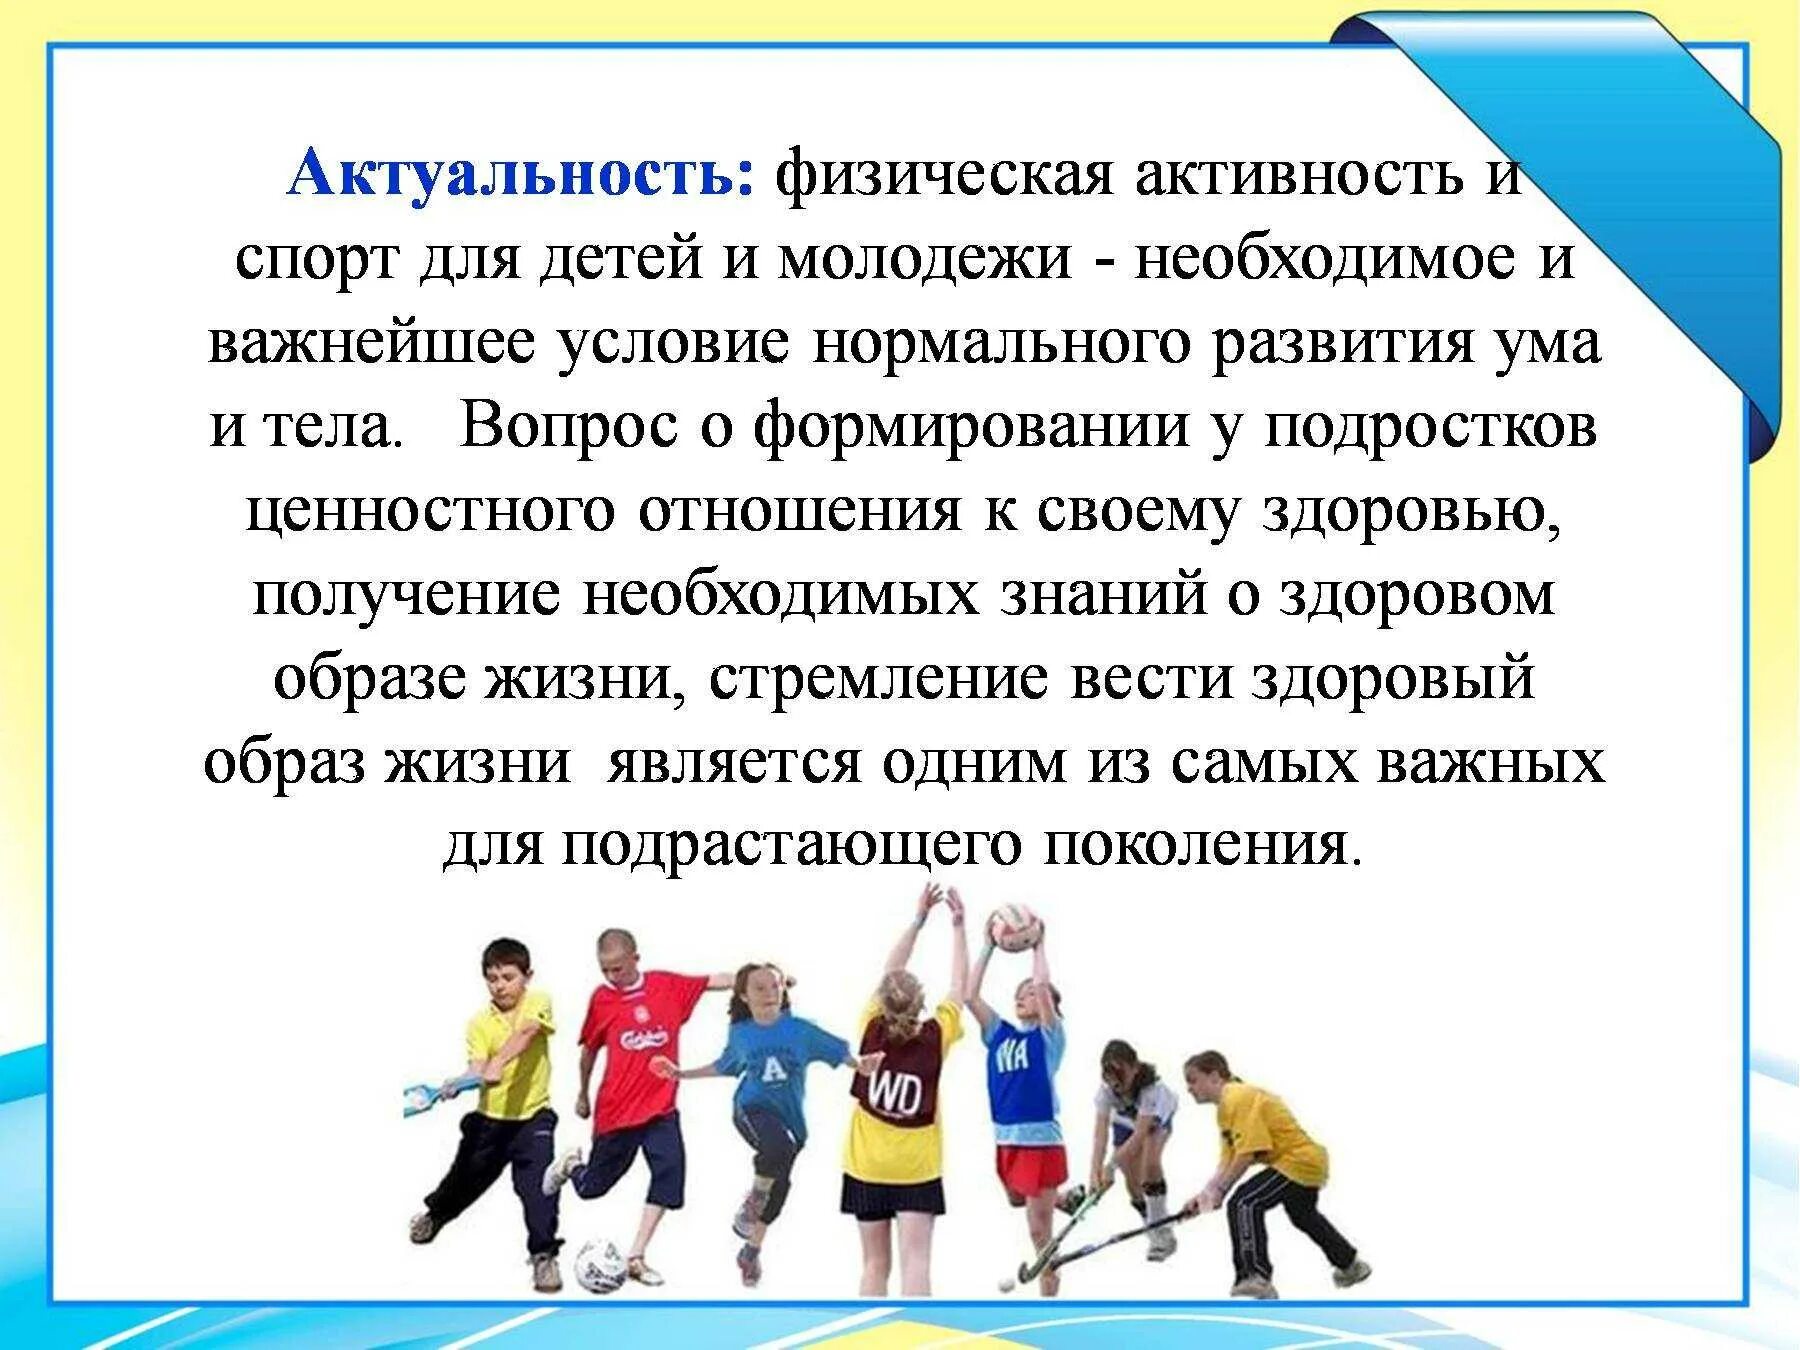 Занятие спортом проект. Актуальность занятия спортом. Физическая активность школьников. Влияние физической активности на организм. Двигательная активность школьников.